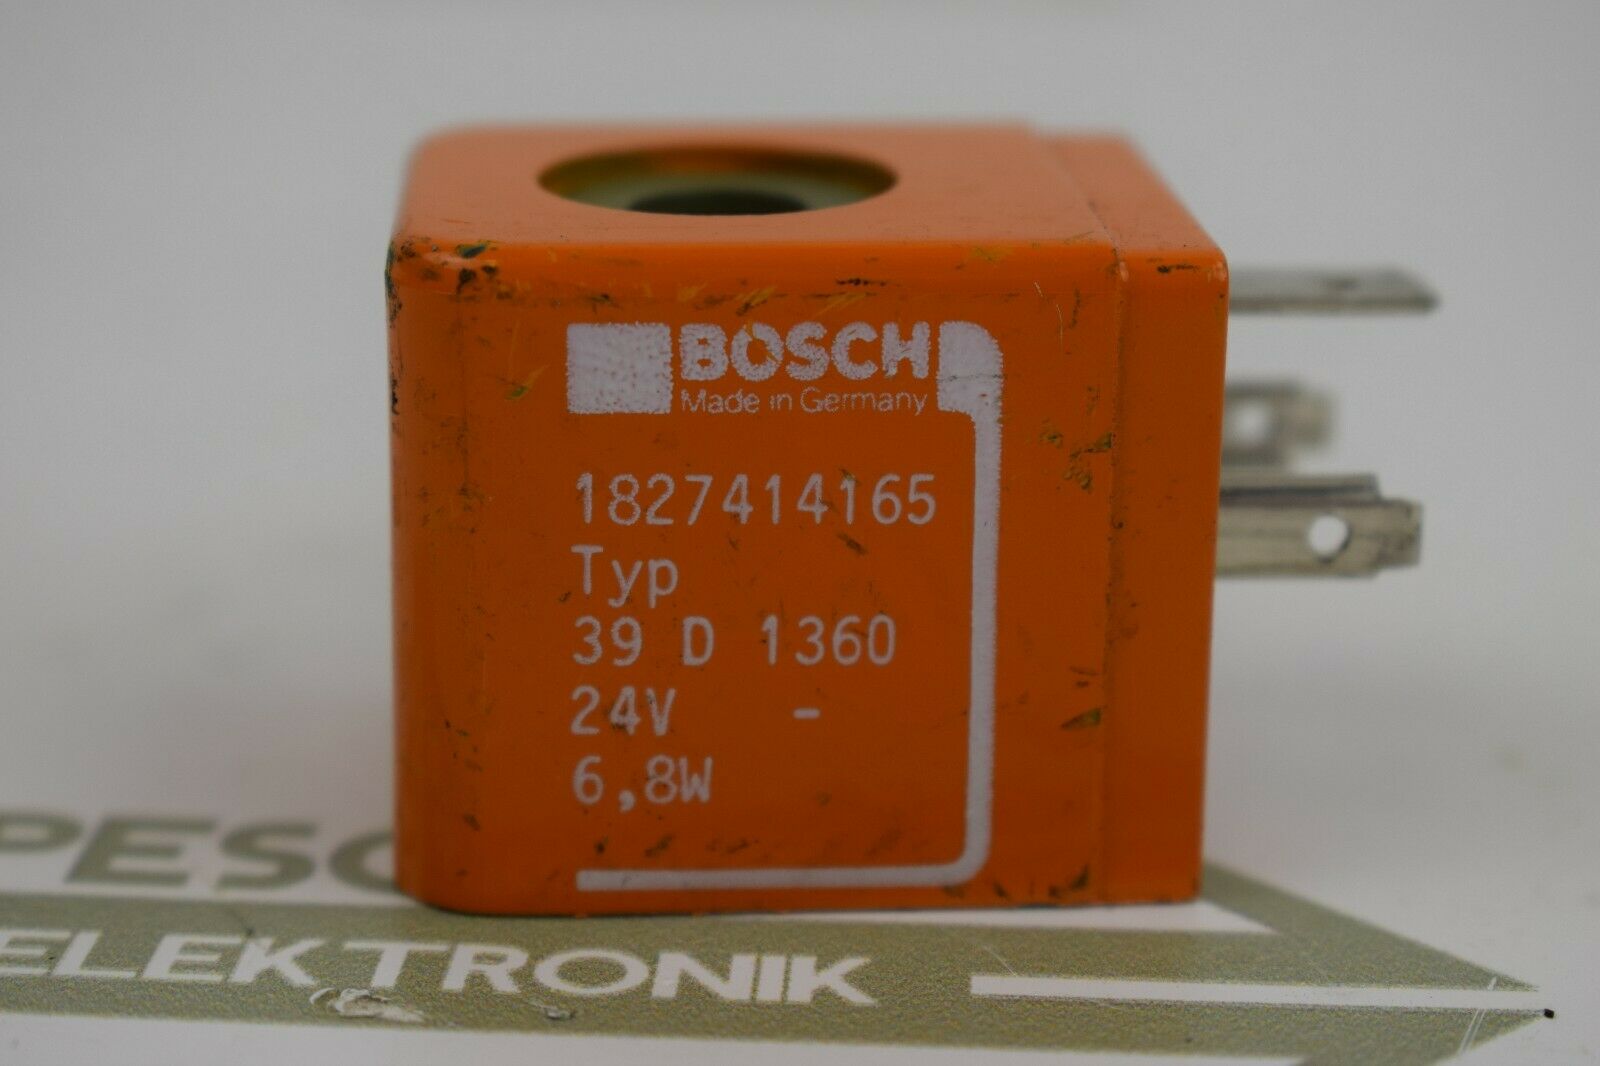 Bosch Typ 39 D 1360 24V 1827414165